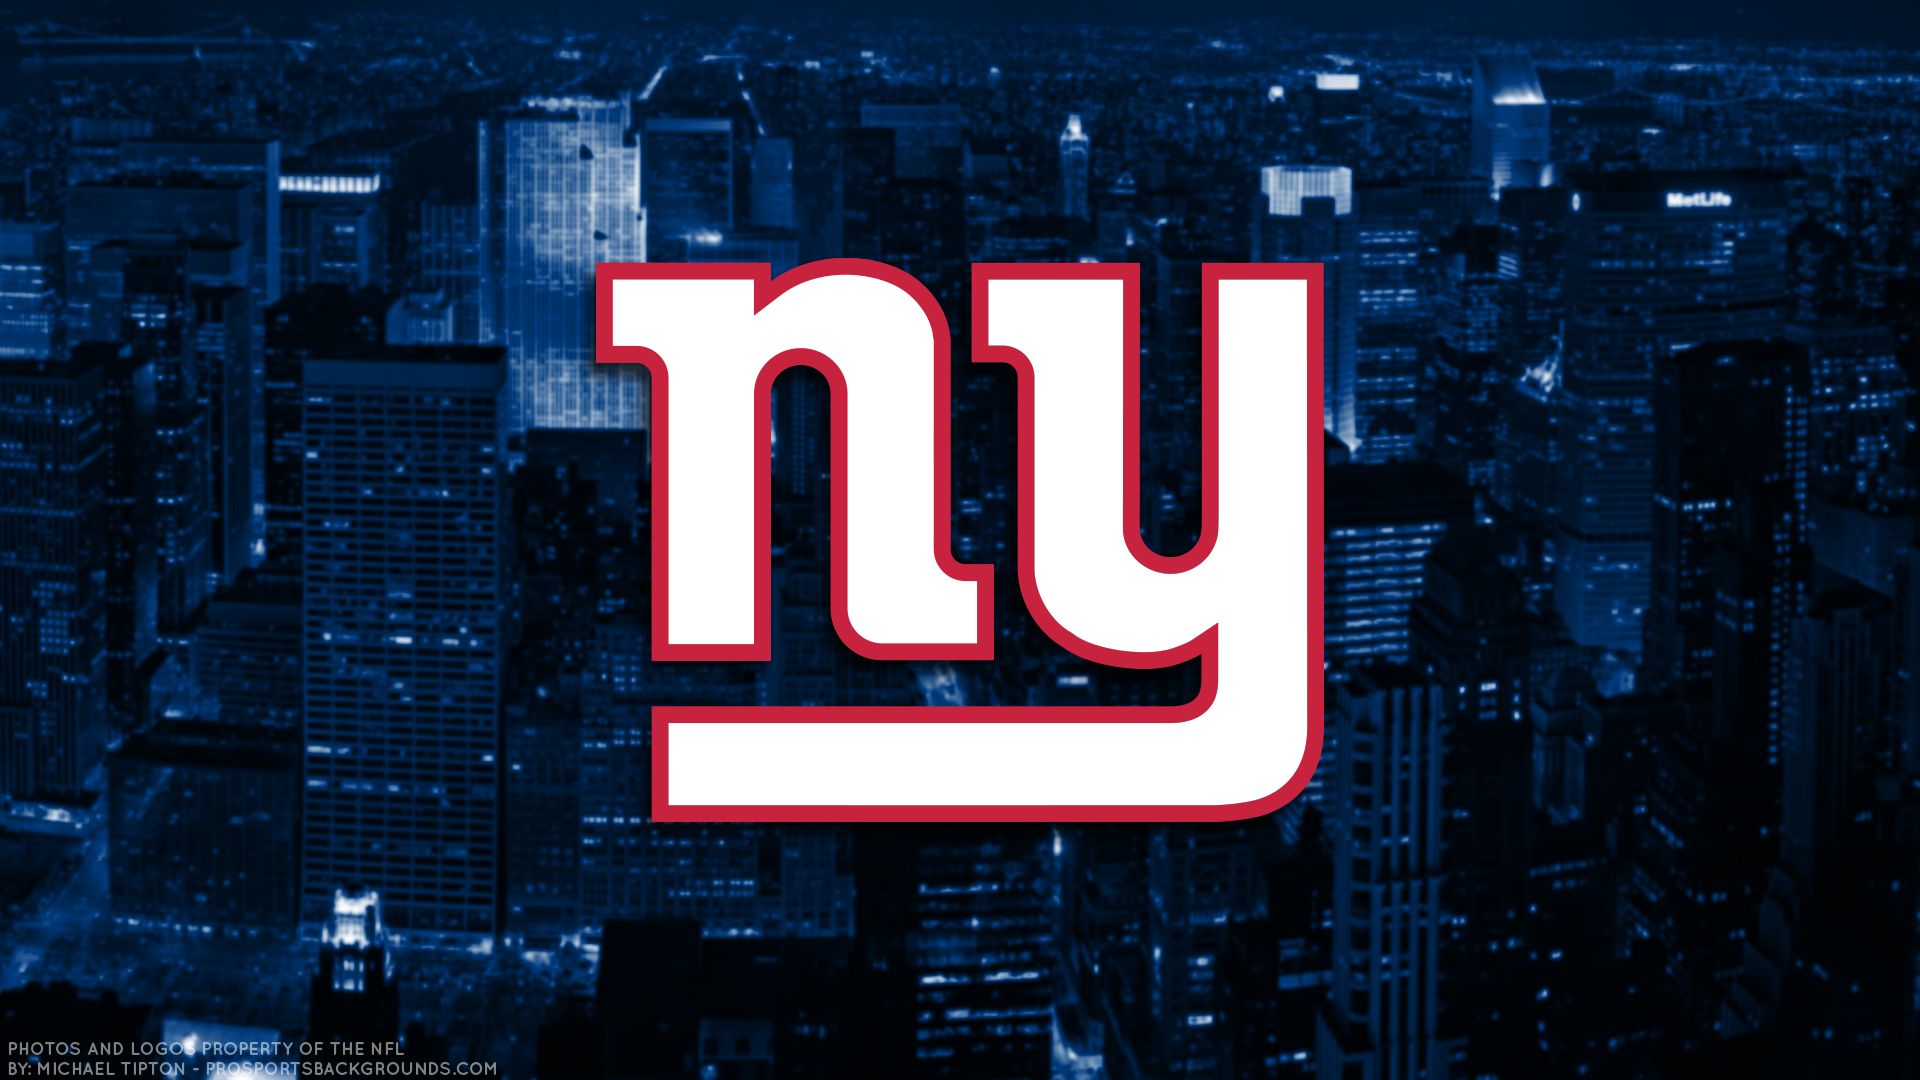 new york giants, sports, emblem, logo, nfl, football